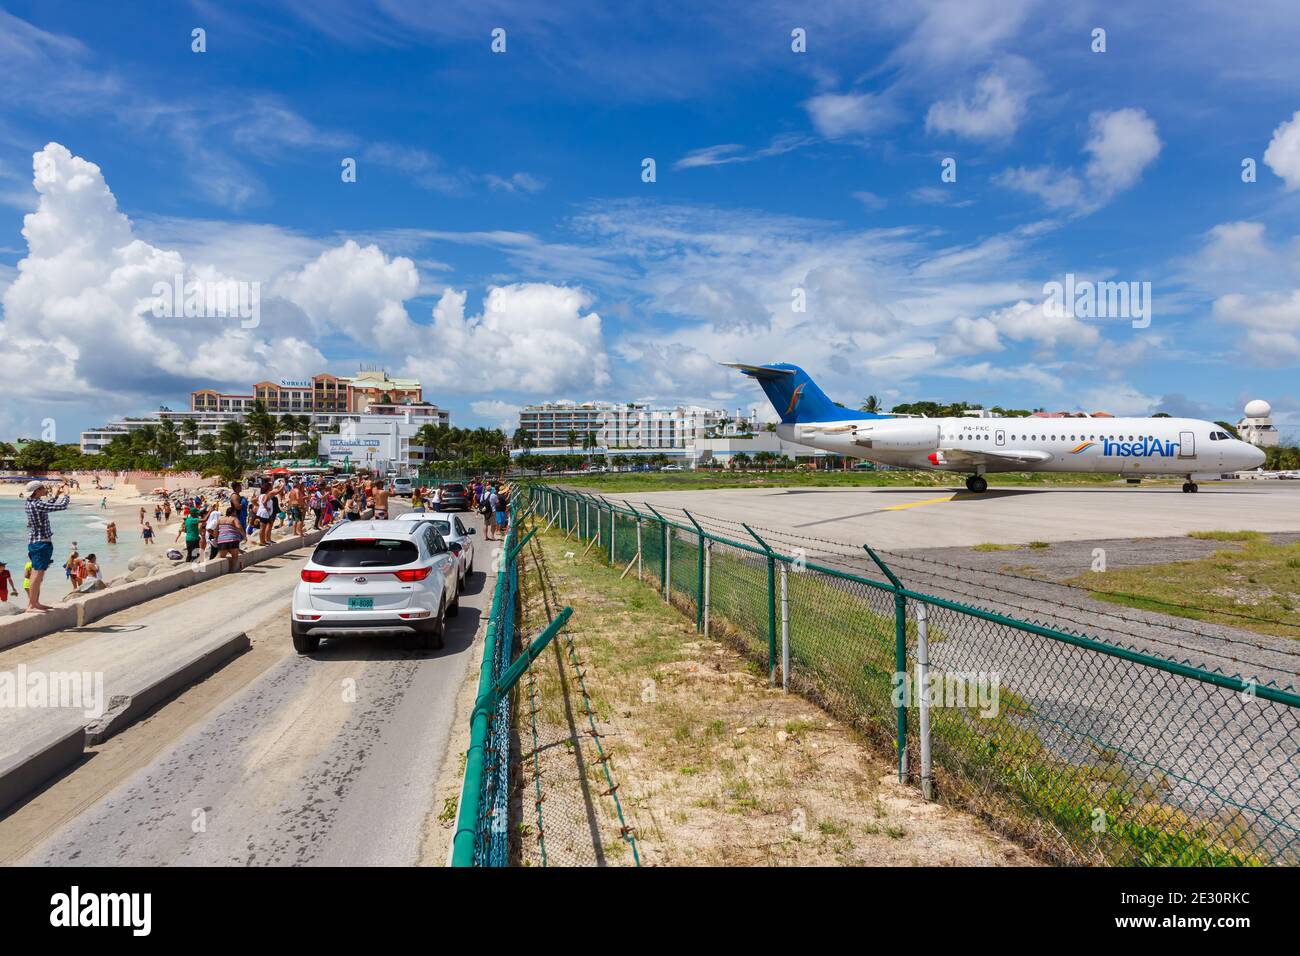 Sint Maarten, Antillas Holandesas - 17 de septiembre de 2016: Avión Insel Air Fokker 70 en el Aeropuerto Sint Maarten (SXM) en el Caribe. Foto de stock